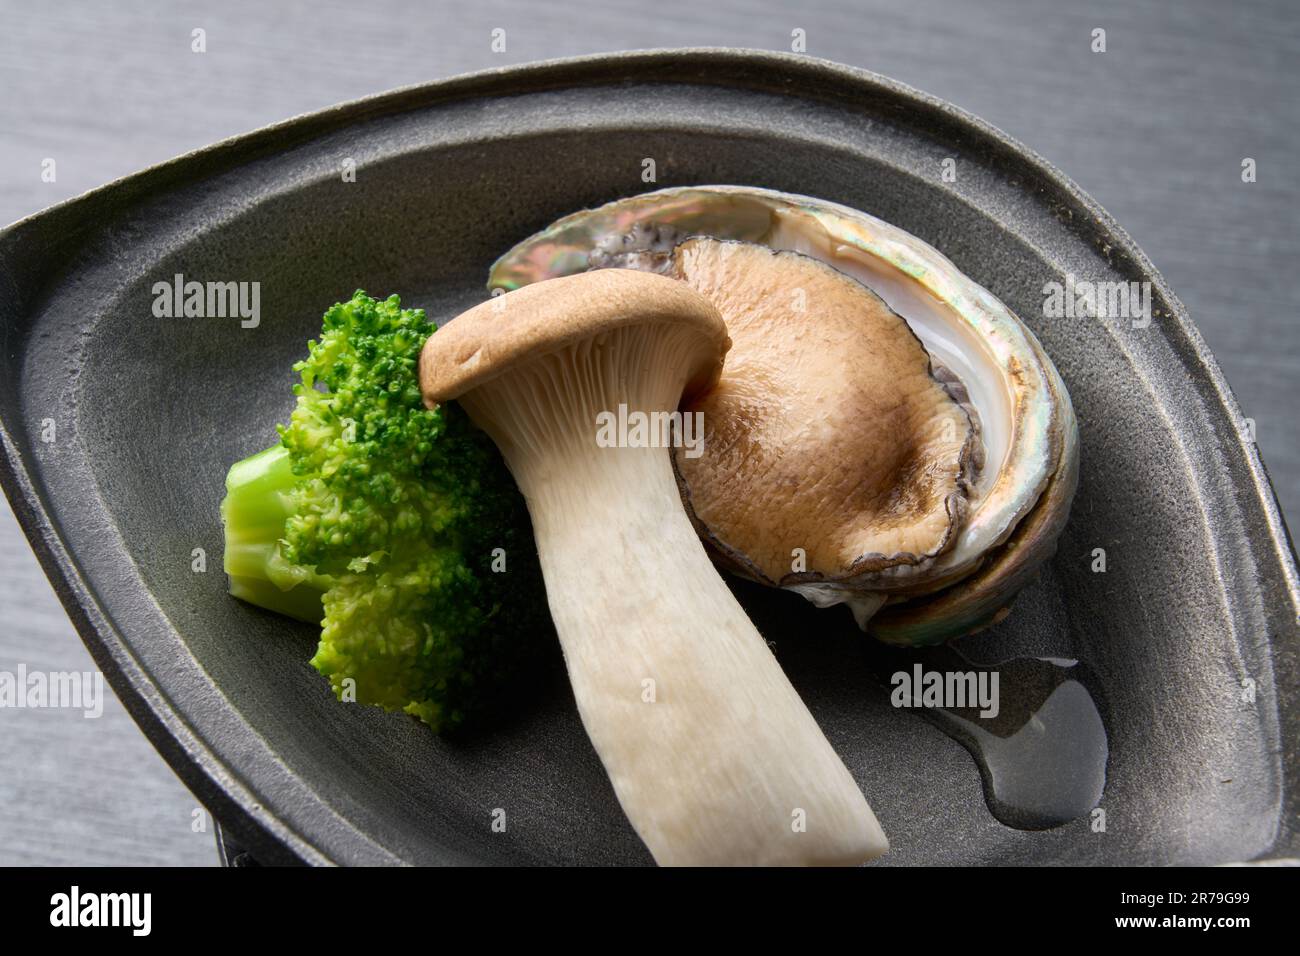 Cuisine japonaise, alone grillée sur une plaque de céramique Banque D'Images